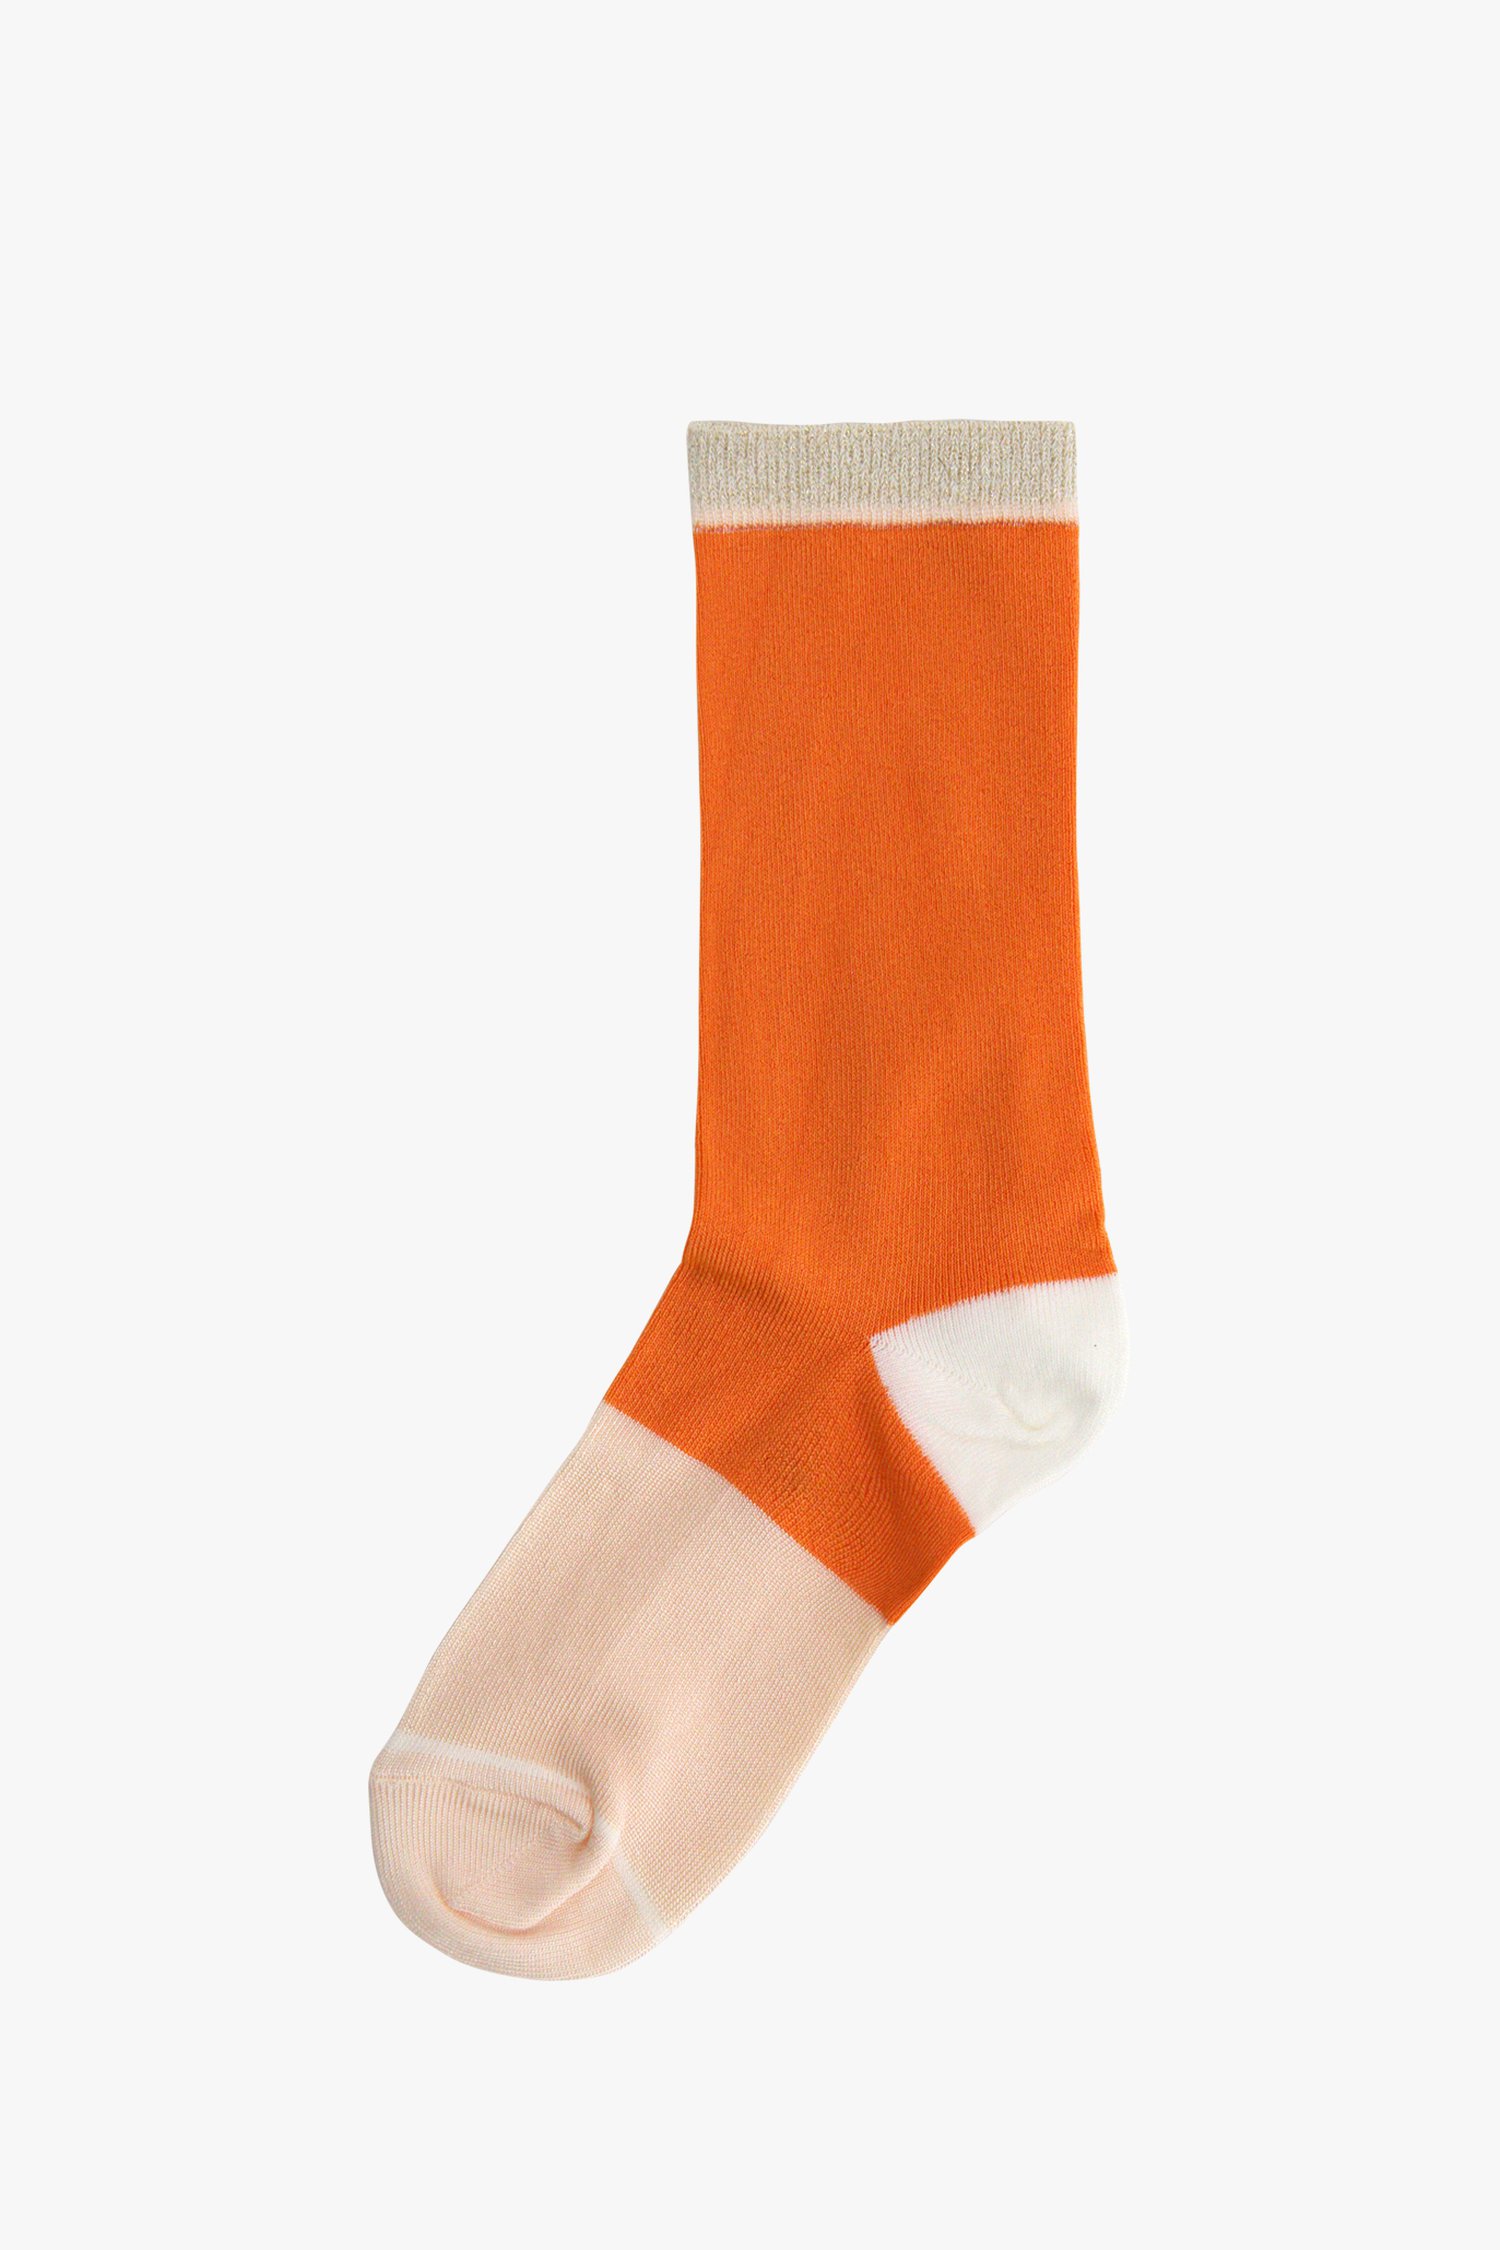 Welsprekend Luchtvaart Auroch Oranje-roze sokken van MP Denmark | 9819430 | e5